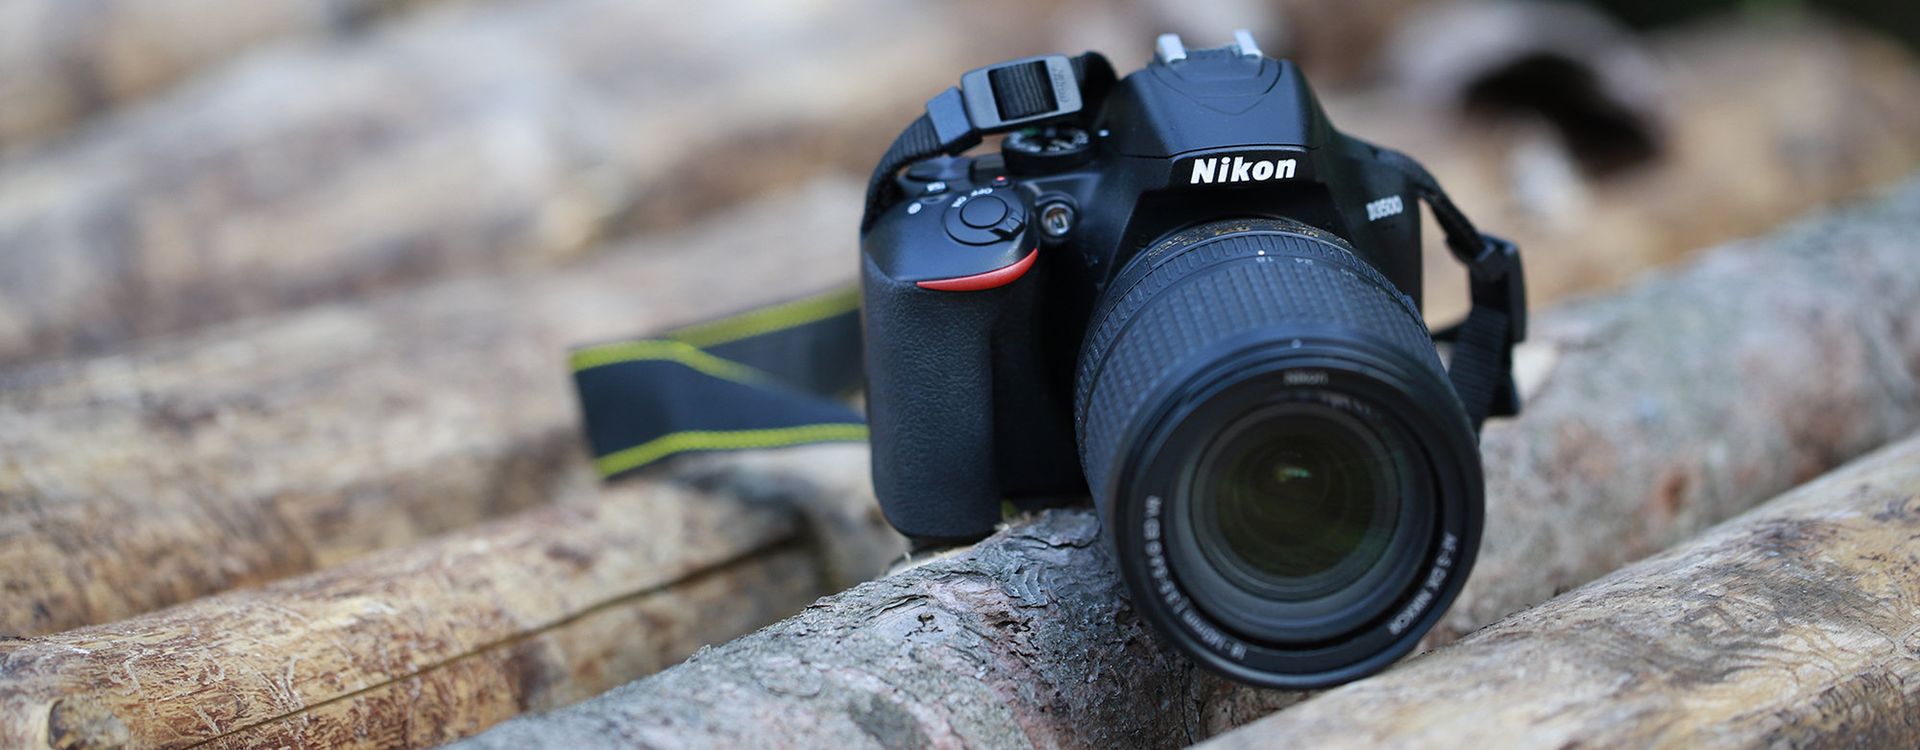 Nikon D3500 Pomoze Ci Uchwycic Najwazniejsze Momenty W Zyciu Test Fotoblogia Pl